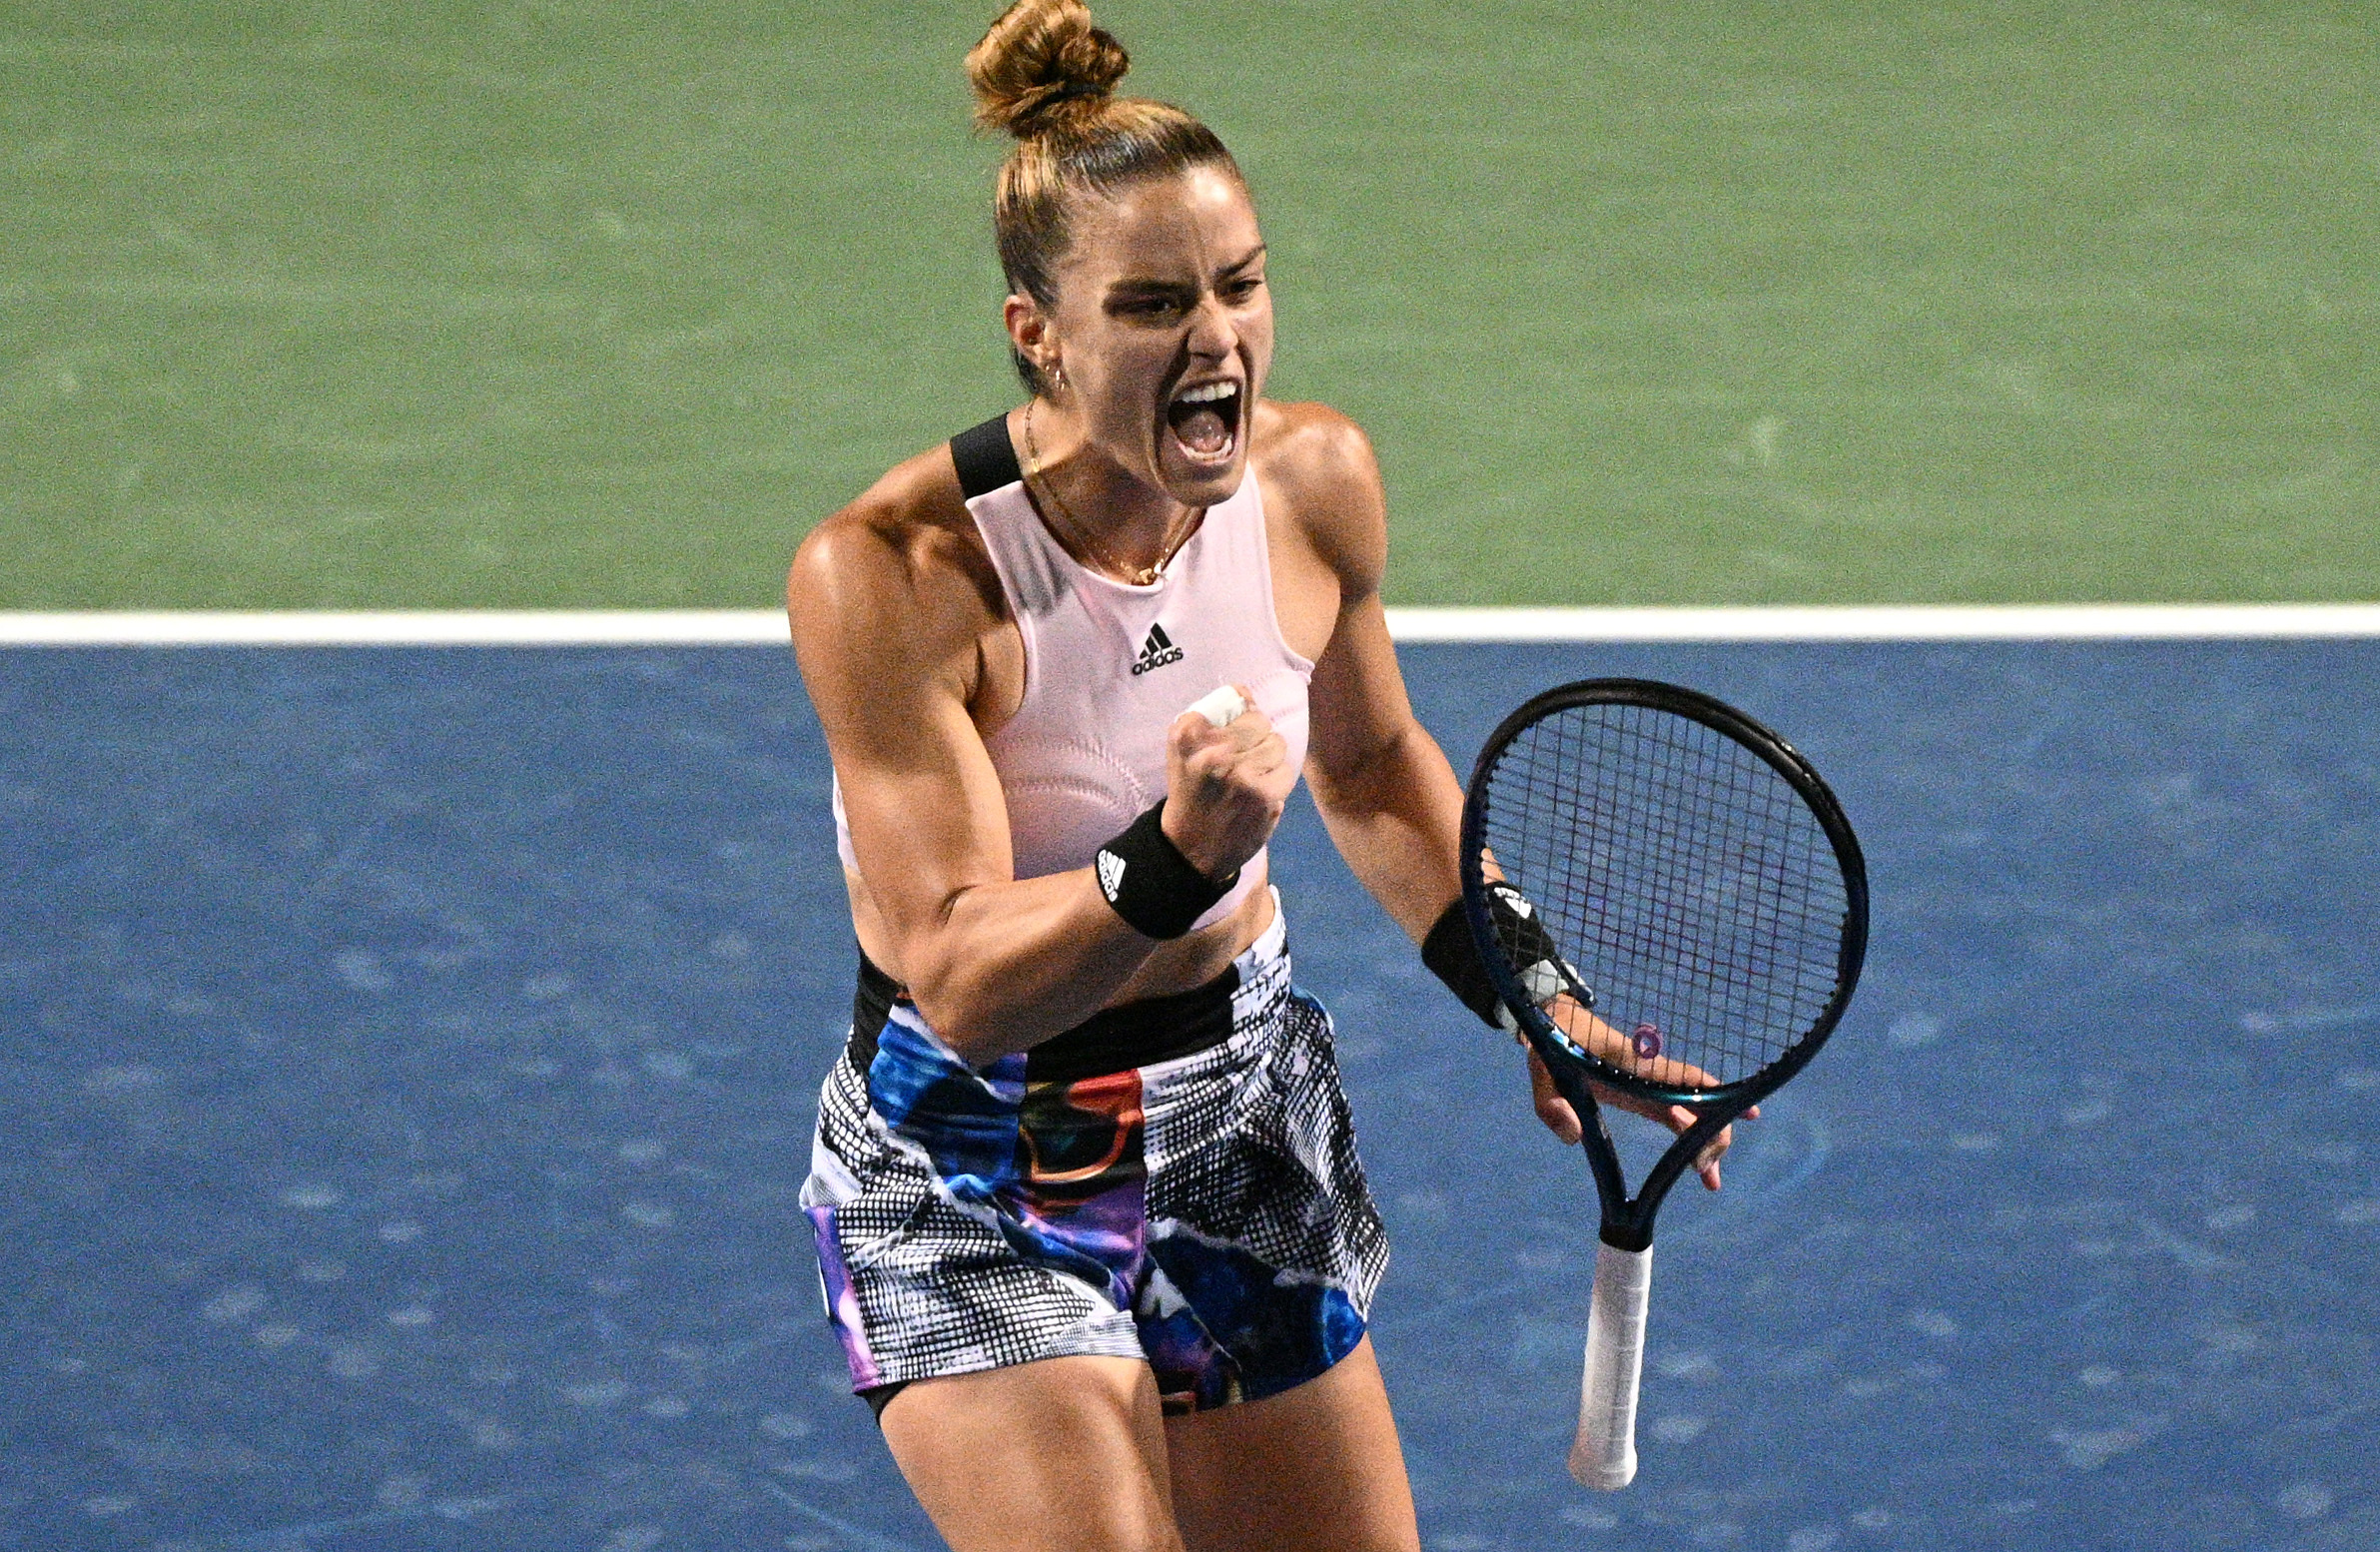 Μαρία Σάκκαρη – Τατιάνα Μαρία 2-1: Επιβλητική νίκη στην πρεμιέρα του US Open